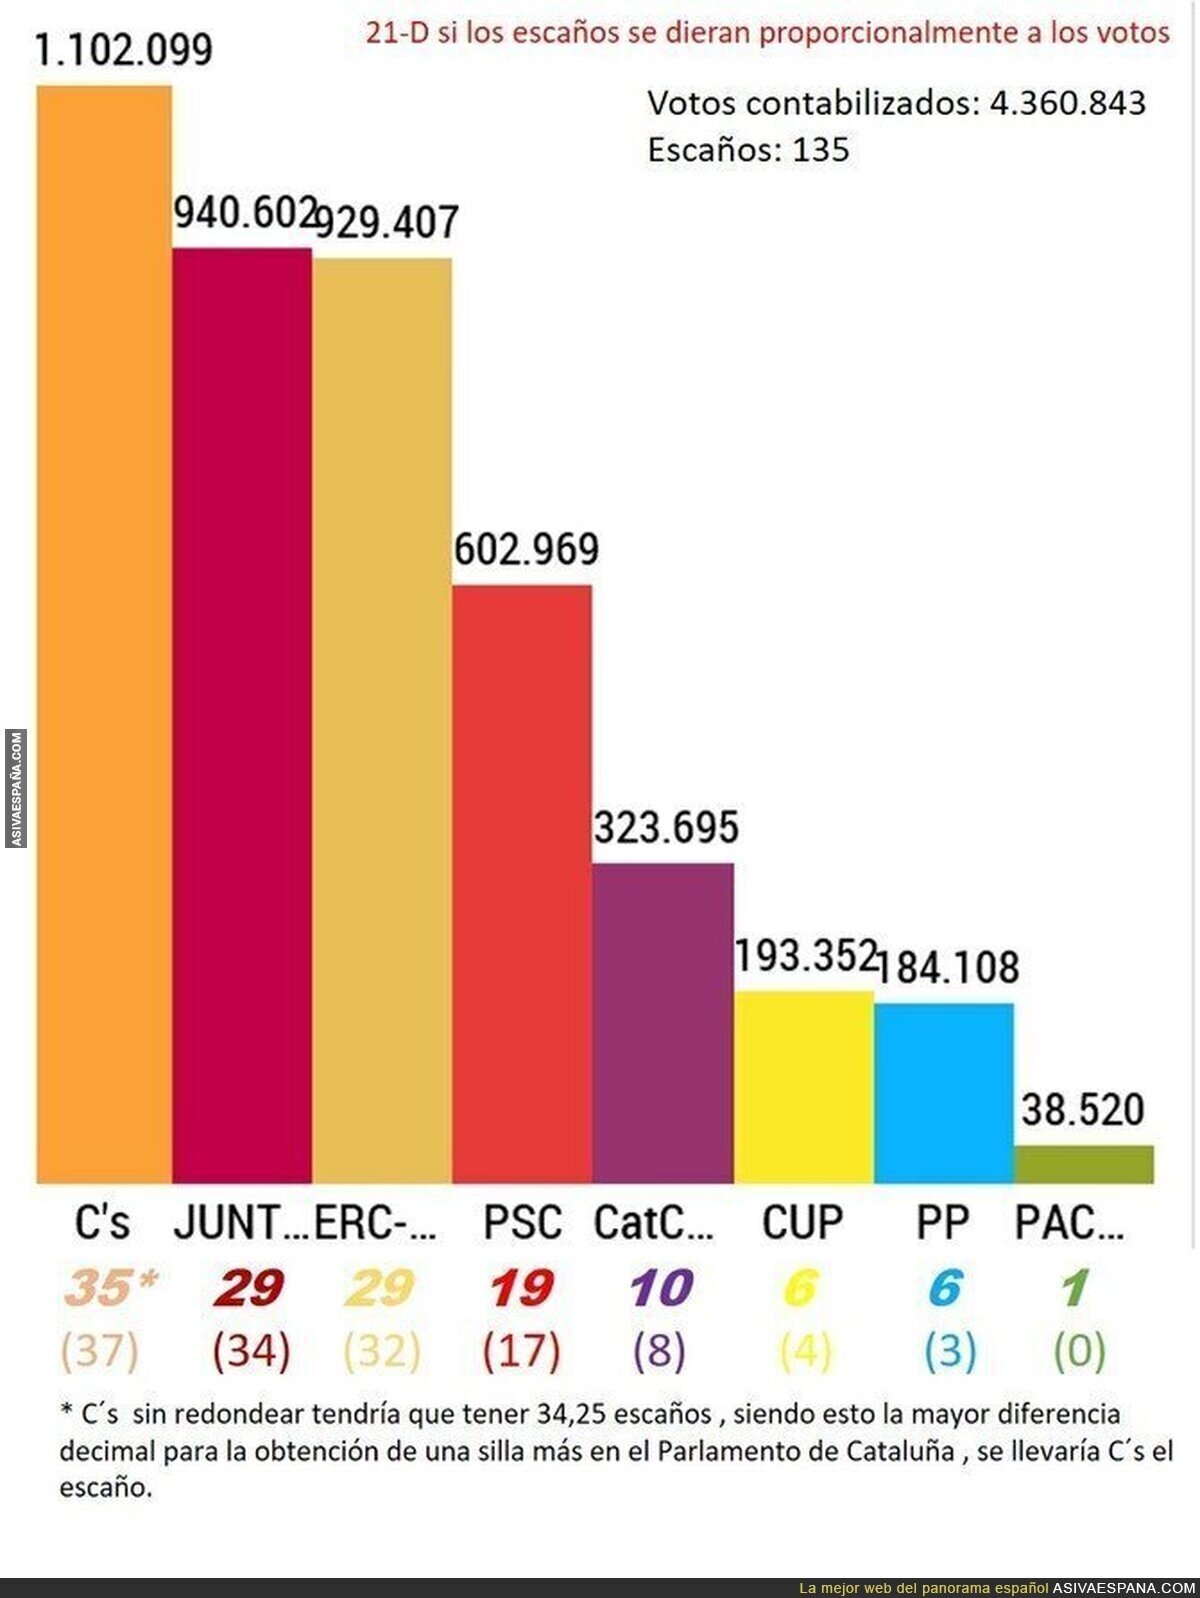 Elecciones autonómicas catalanas del 21-D si se hicieran en proporción votos-escaños